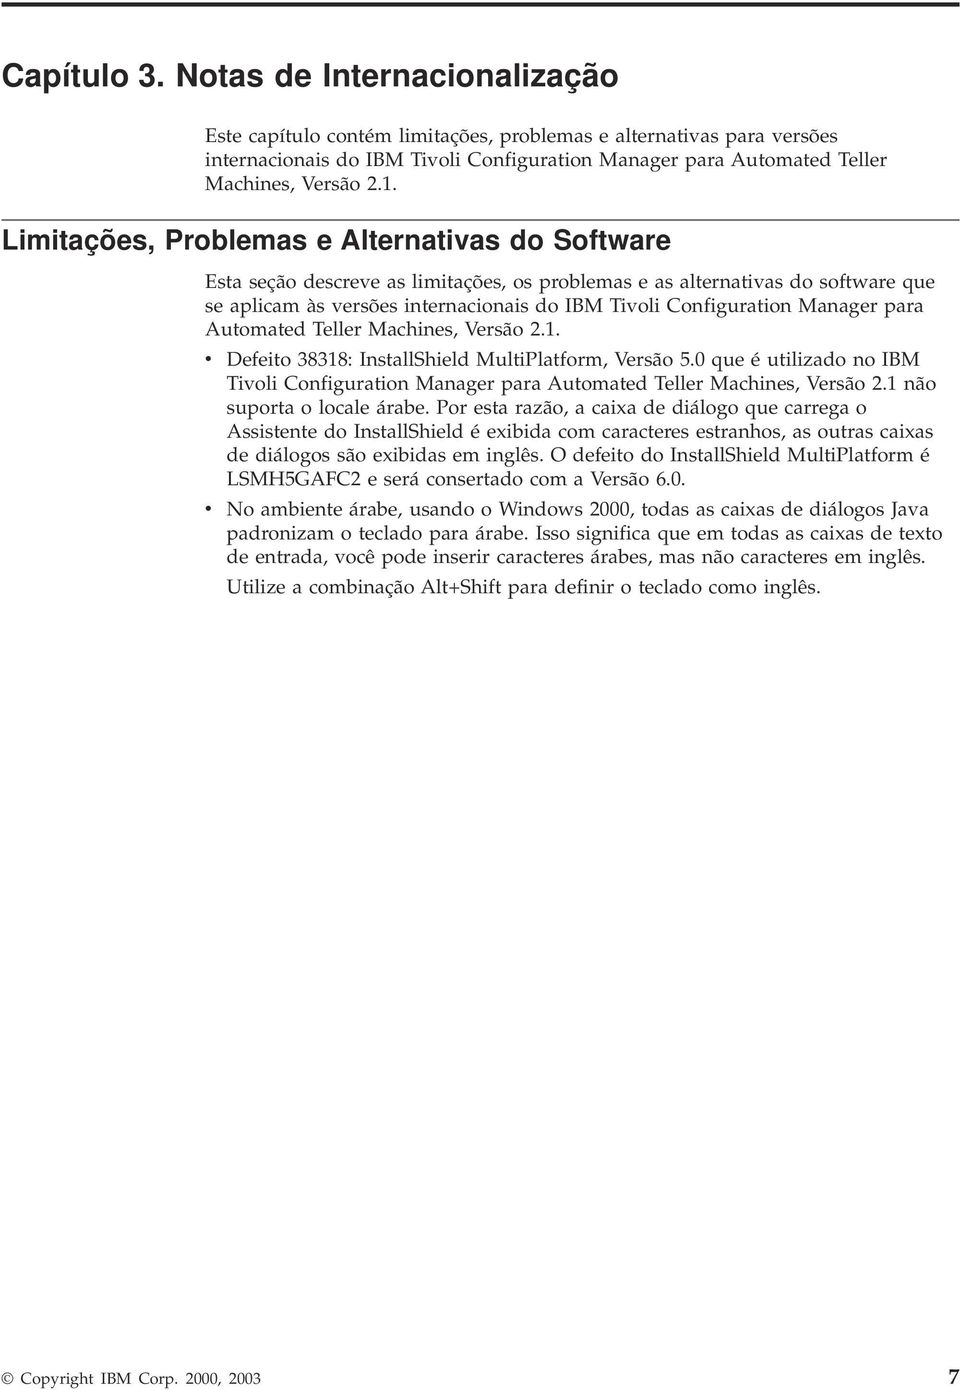 Limitações, Problemas e Alternativas do Software Esta seção descreve as limitações, os problemas e as alternativas do software que se aplicam às versões internacionais do IBM Tivoli Configuration